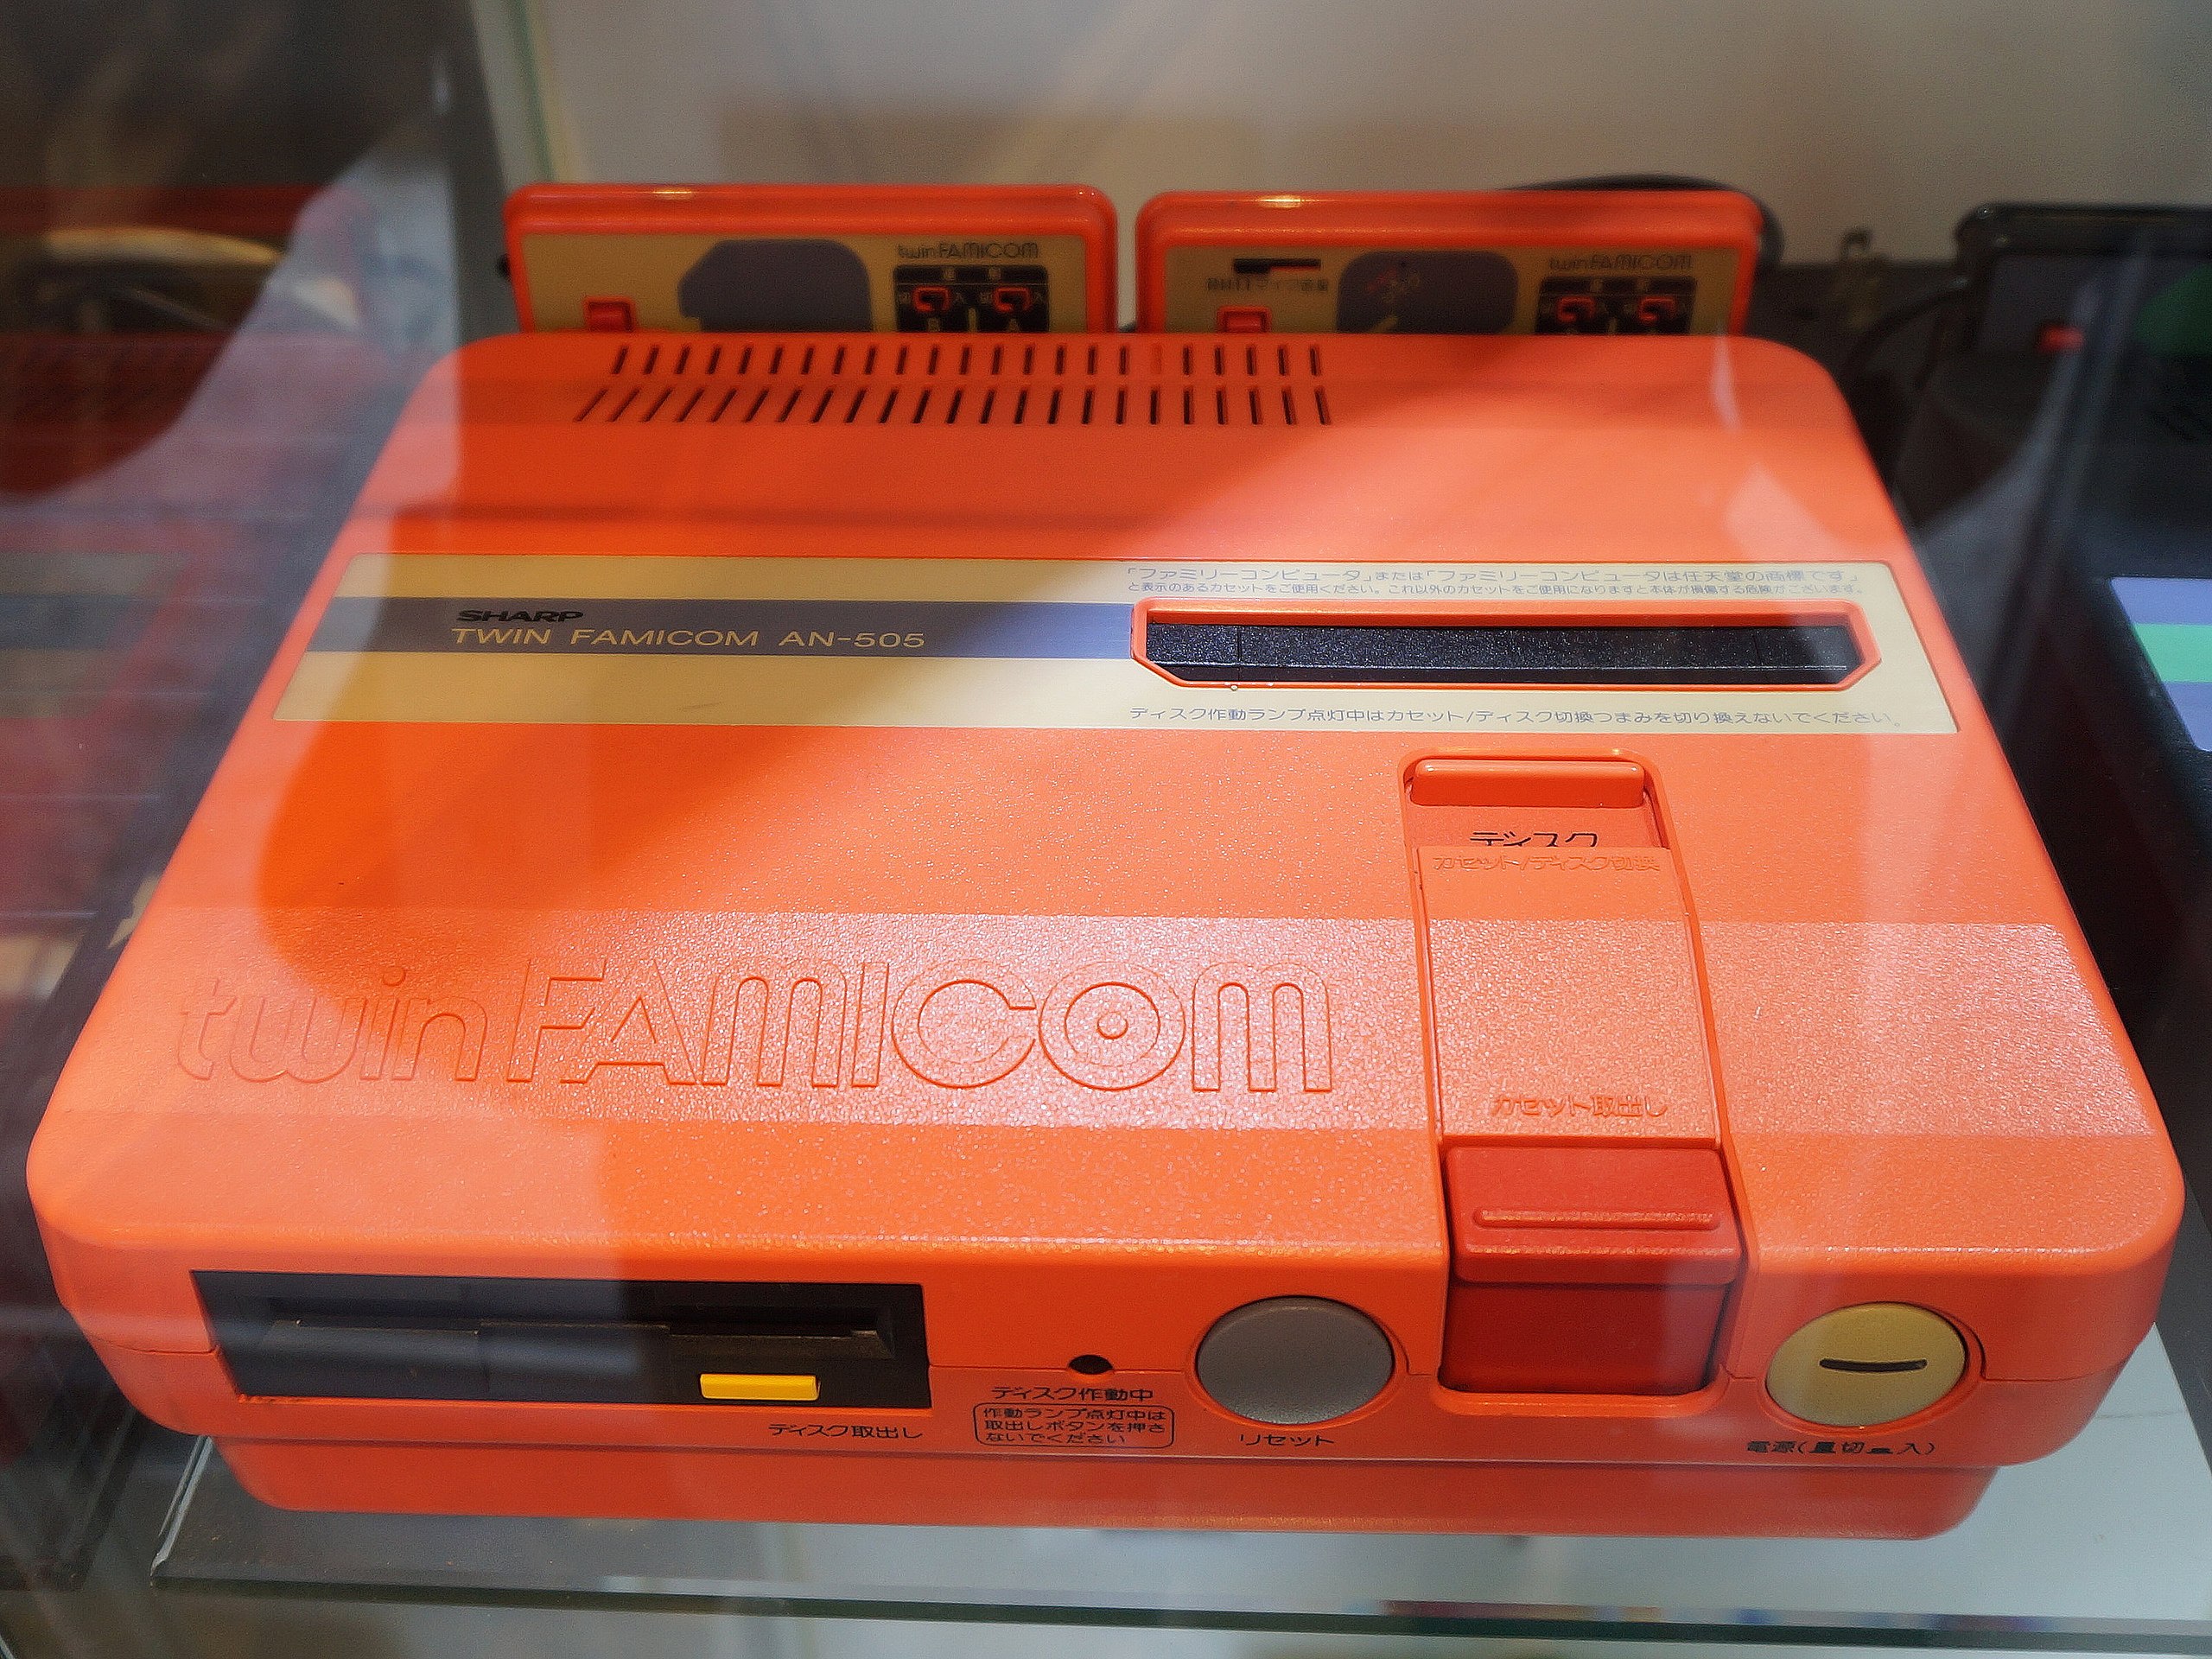 File:Sharp Twin Famicom AN-505R 20200913.jpg - Wikipedia